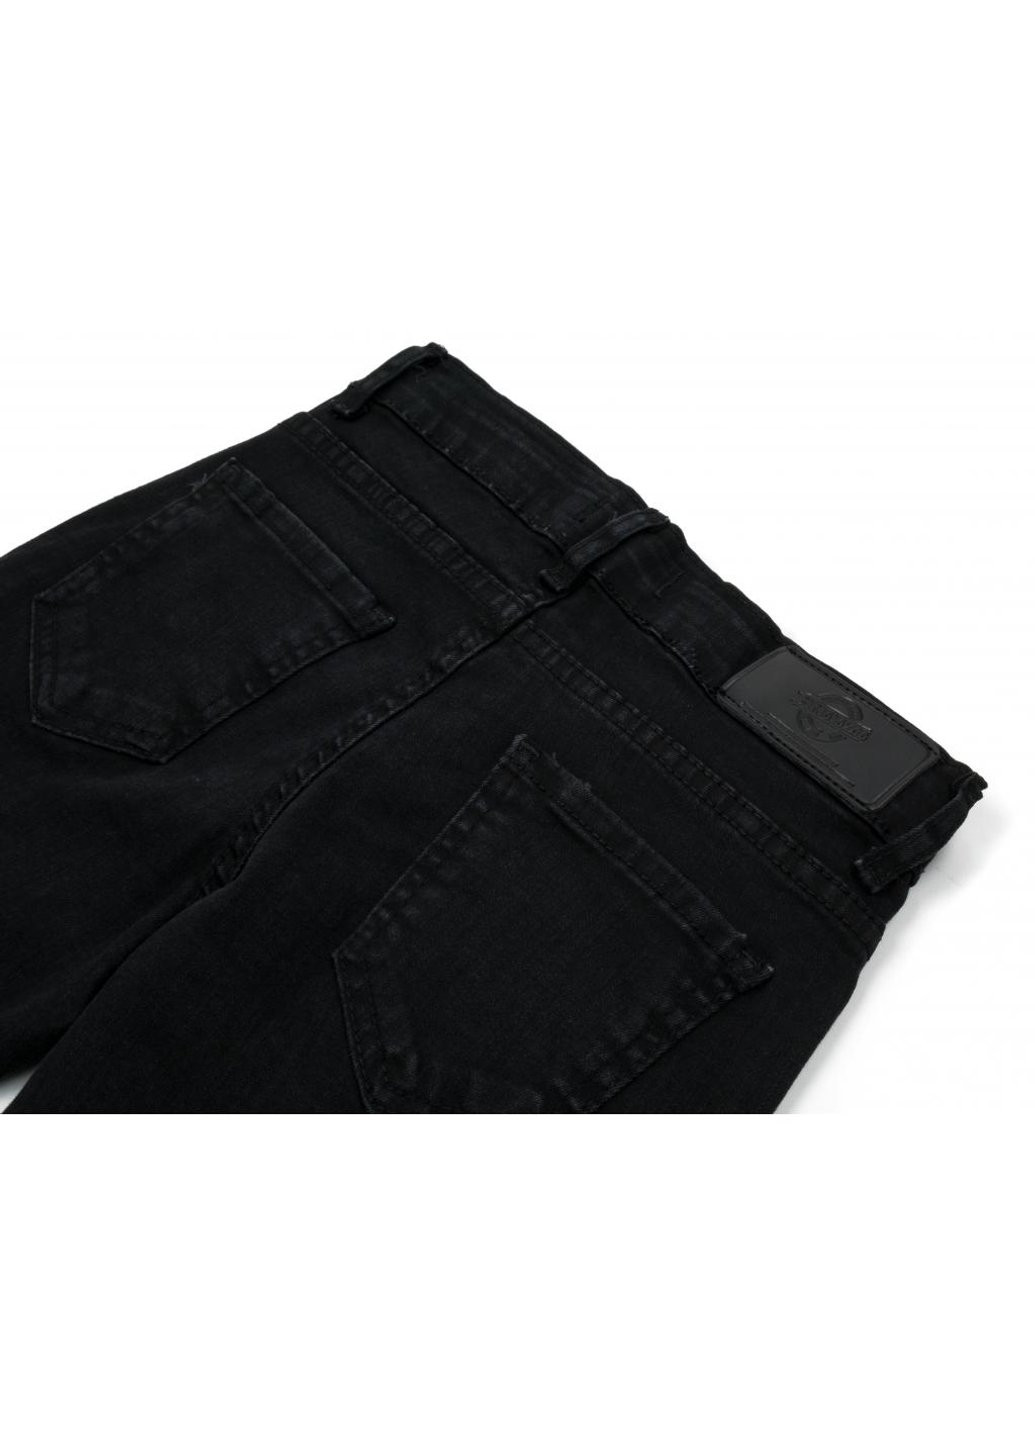 Черные демисезонные джинсы с дырками (20214-134g-black) Breeze